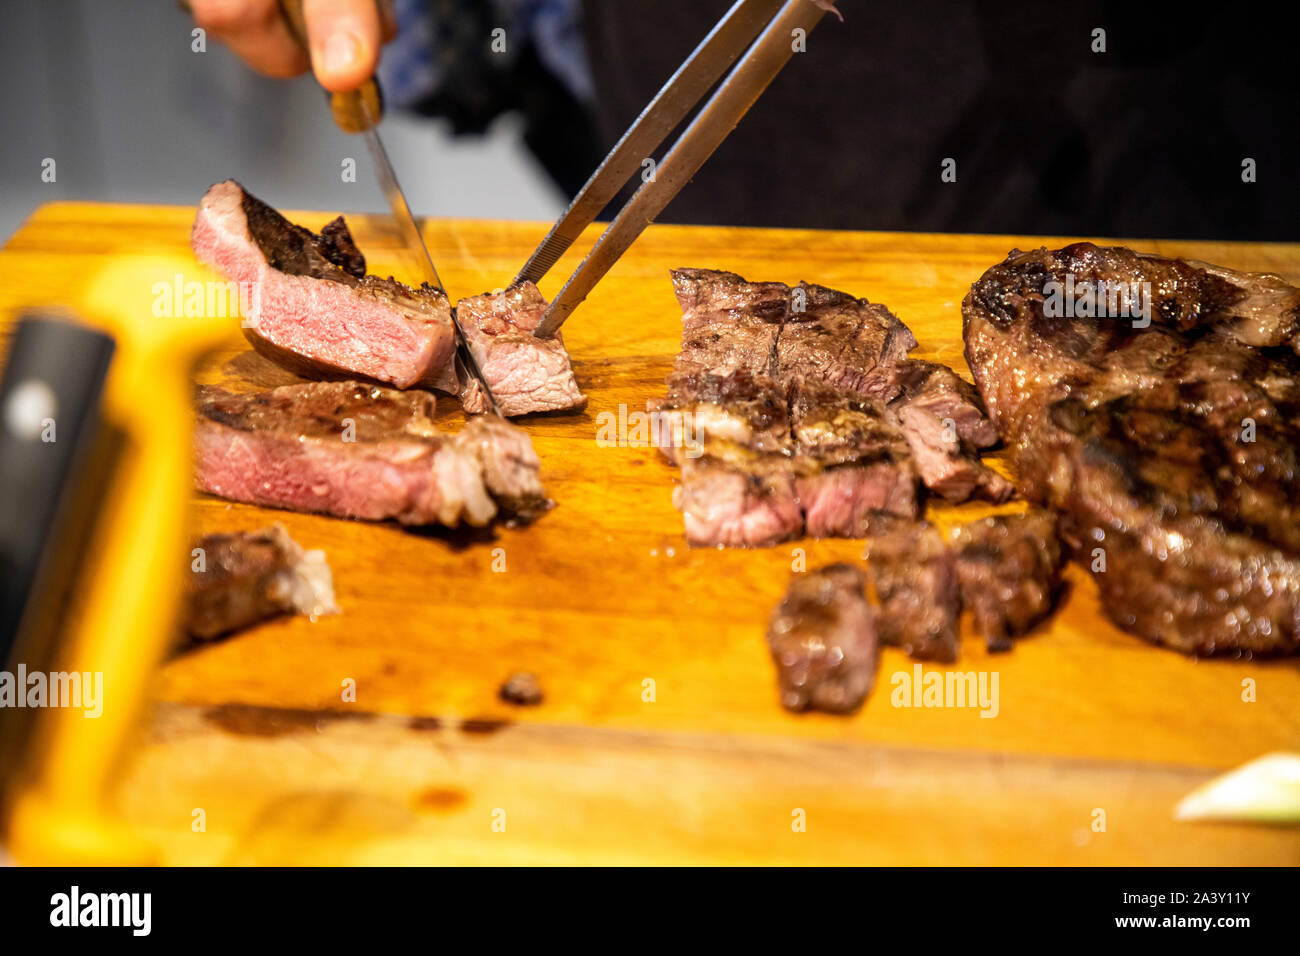 La viande grillée, la viande bovine, est coupée en portions par le cuisinier, Banque D'Images